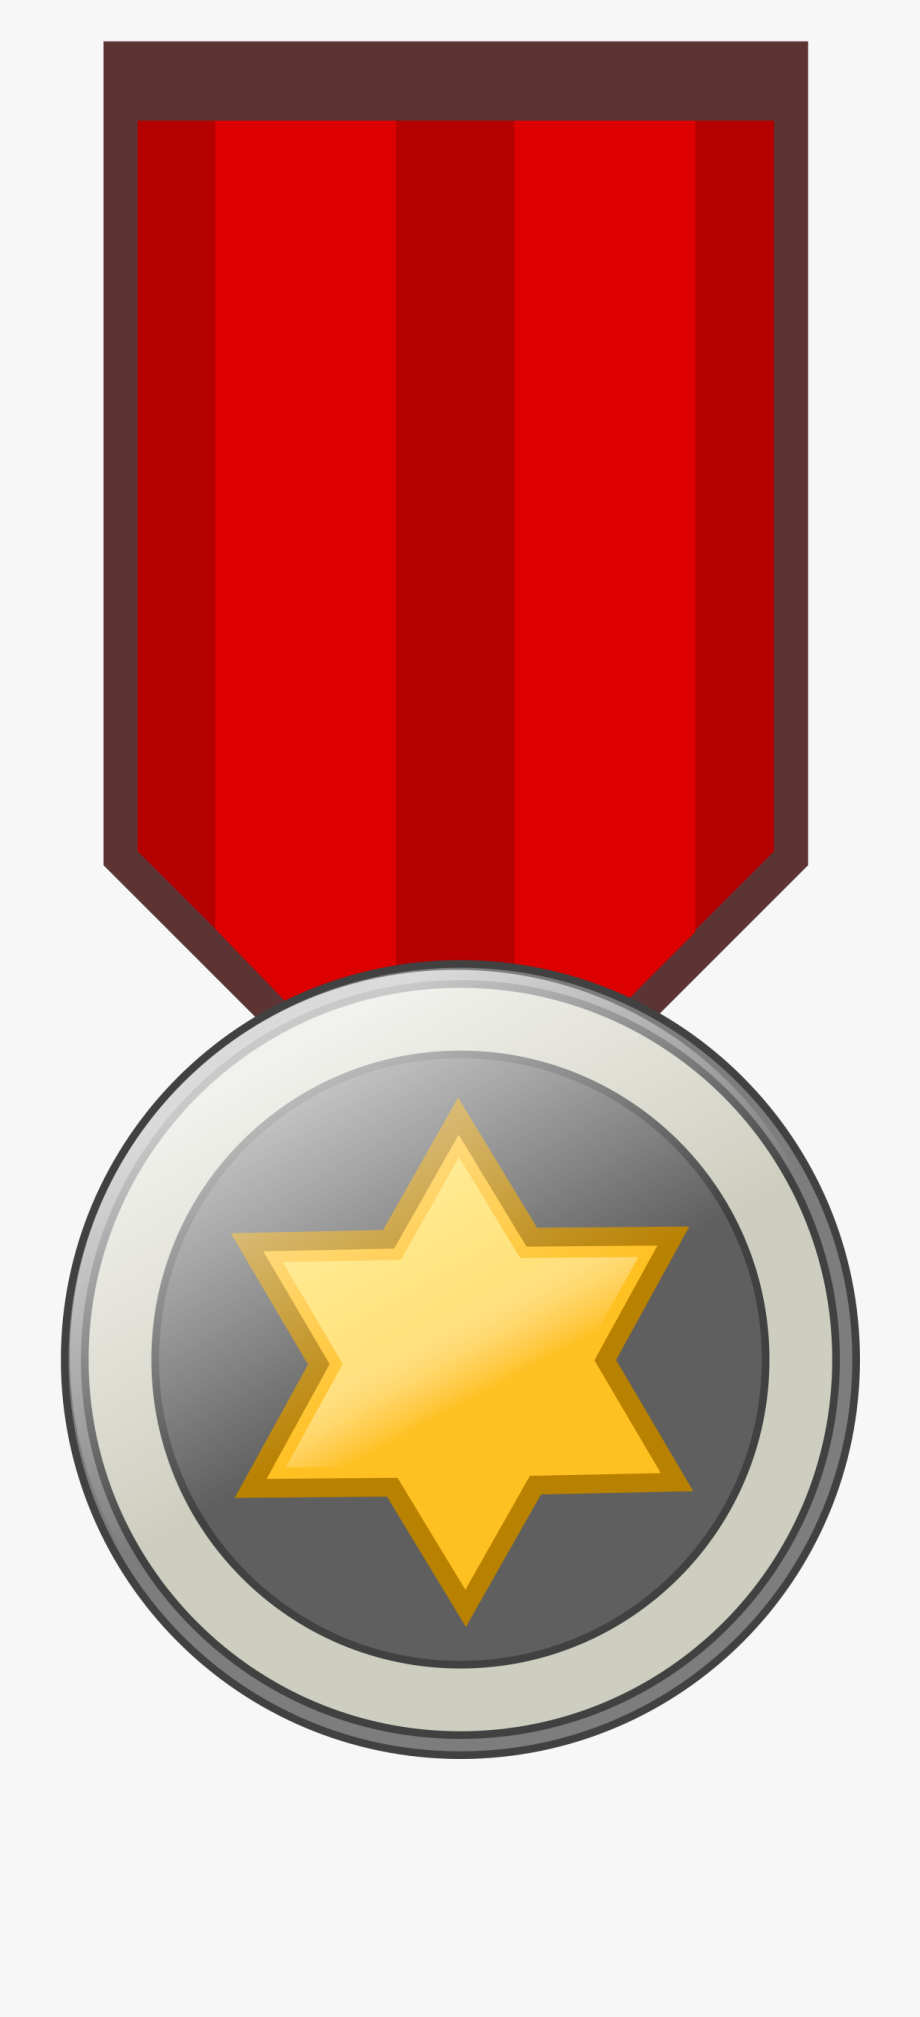 Gold Medal Award Ribbon Badge